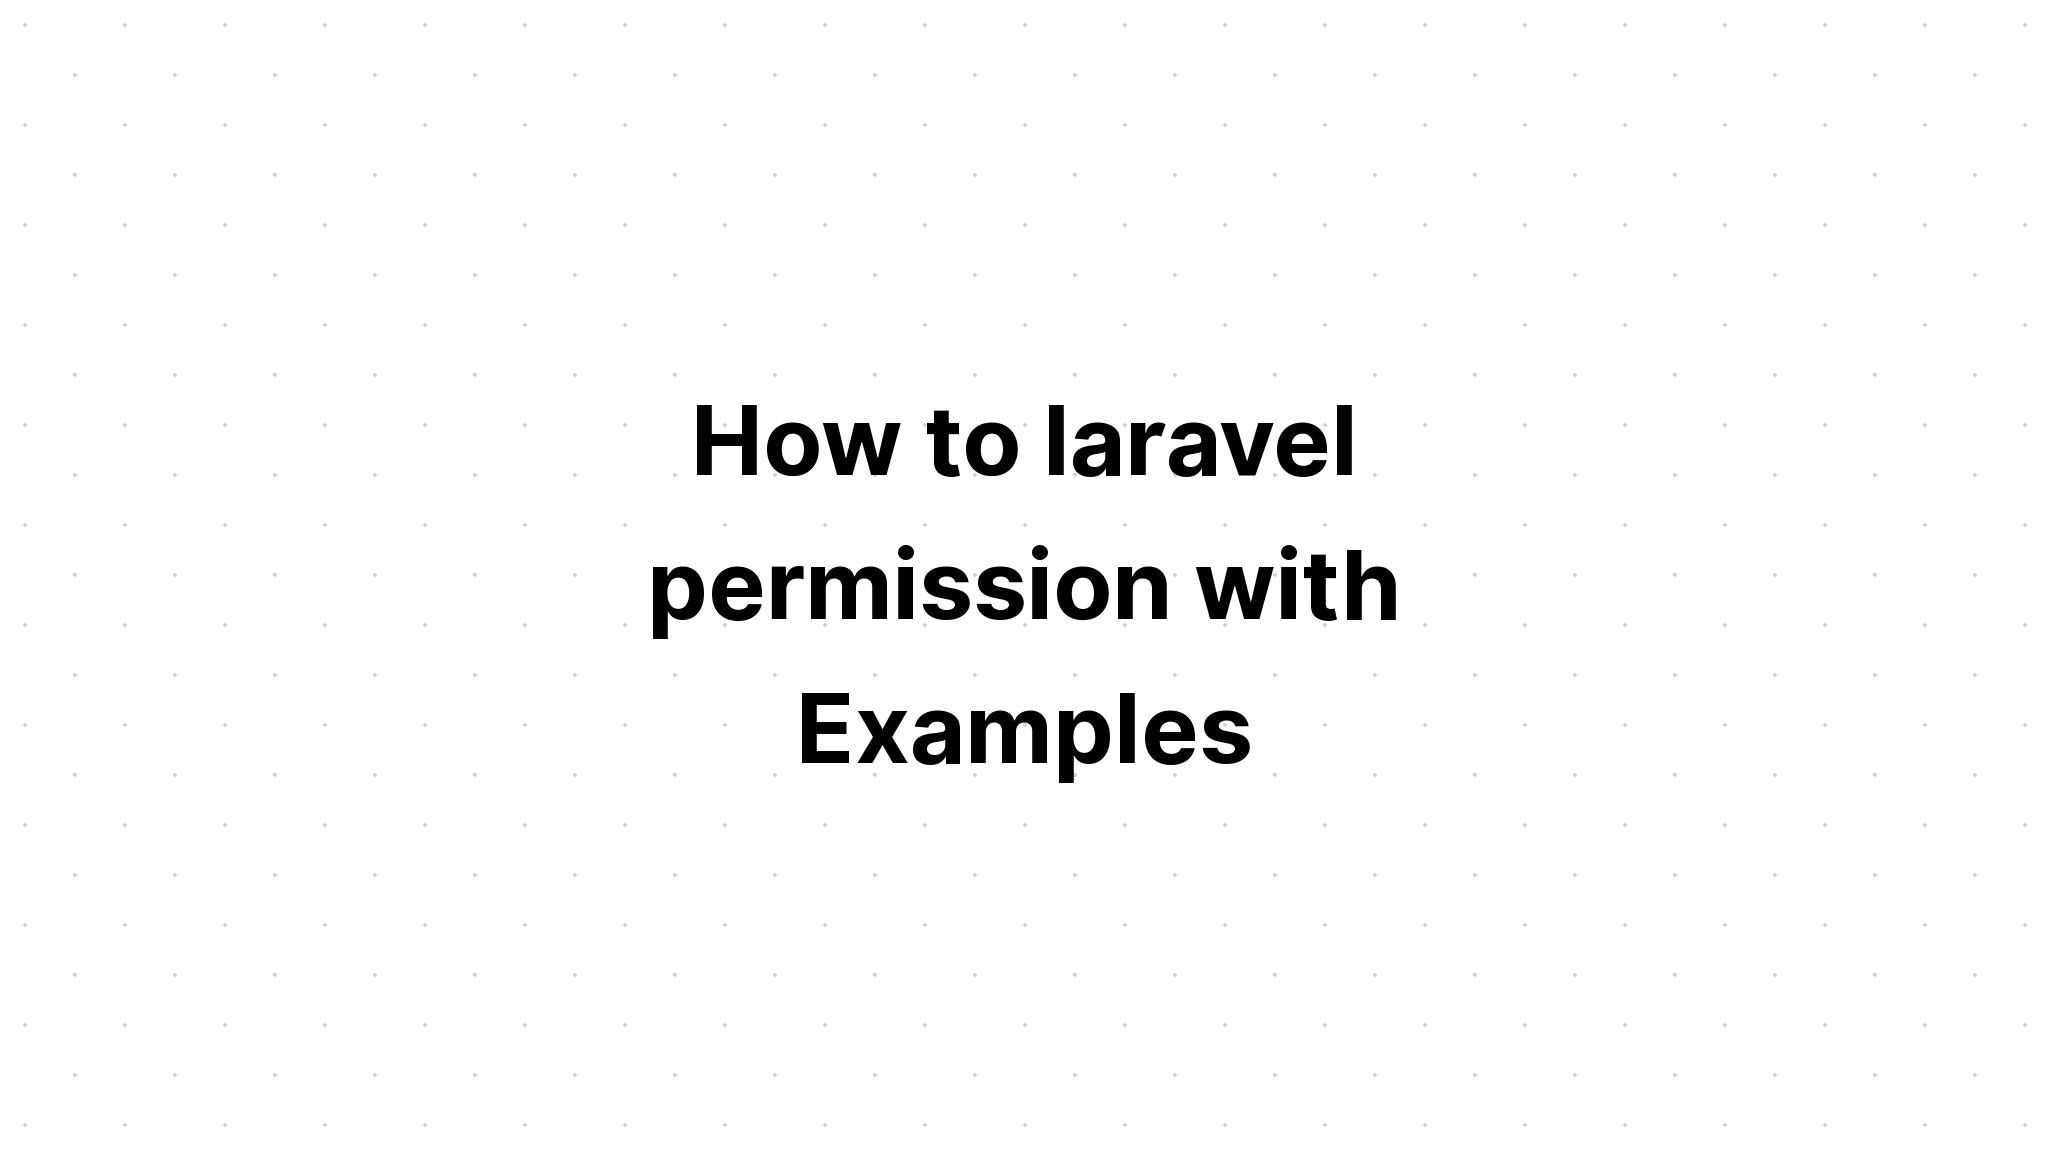 Cách cấp phép laravel với các ví dụ